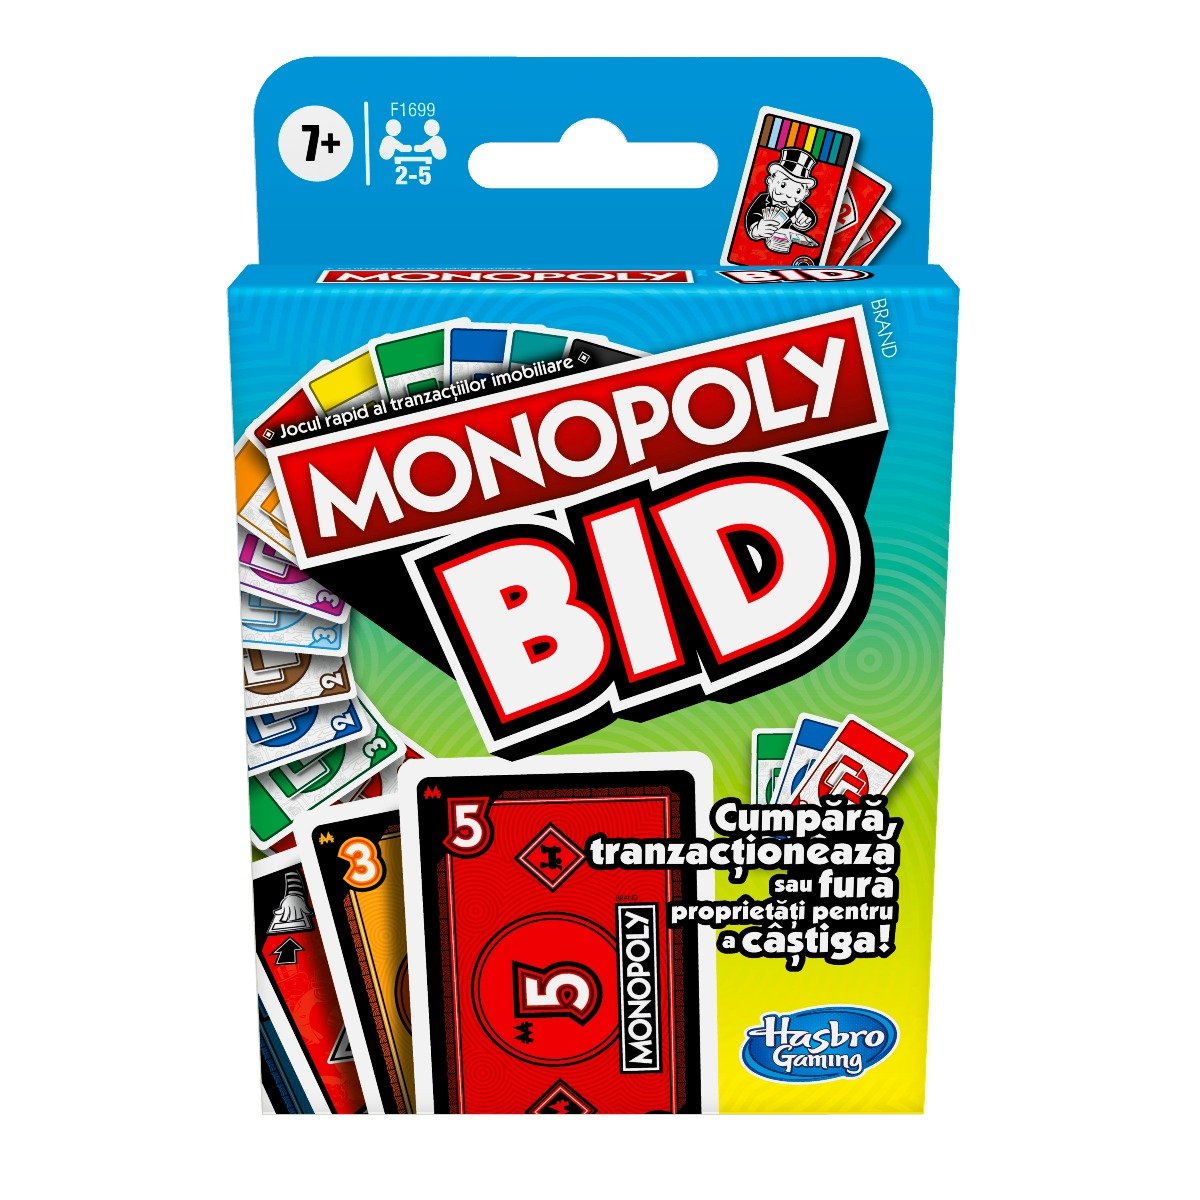 Poze Joc Monopoly Bid